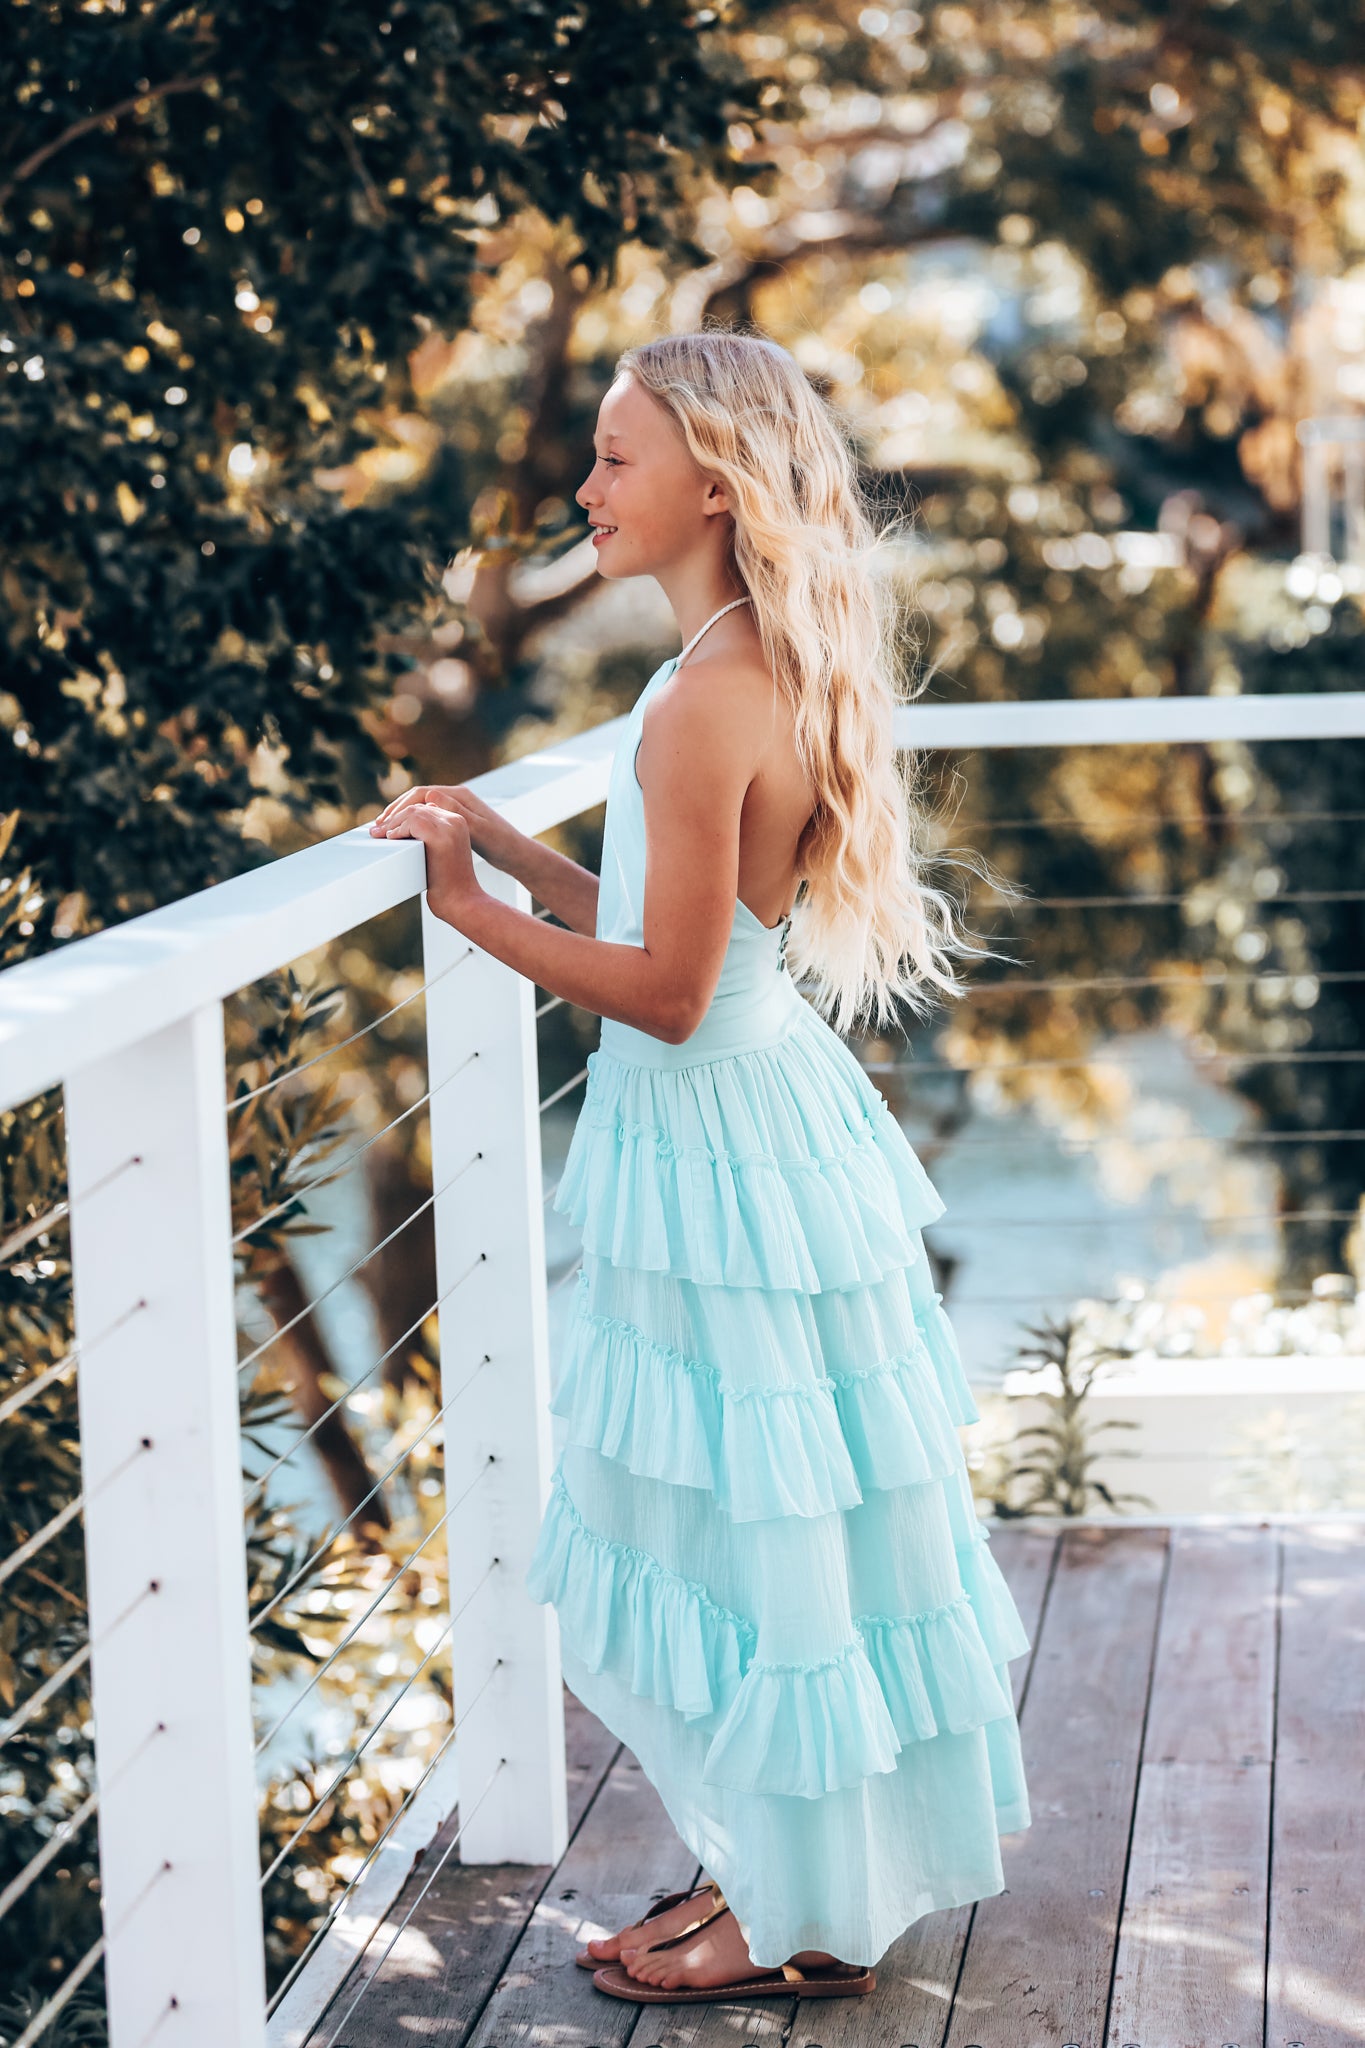 Short Formal Dresses Australia - June Bridals